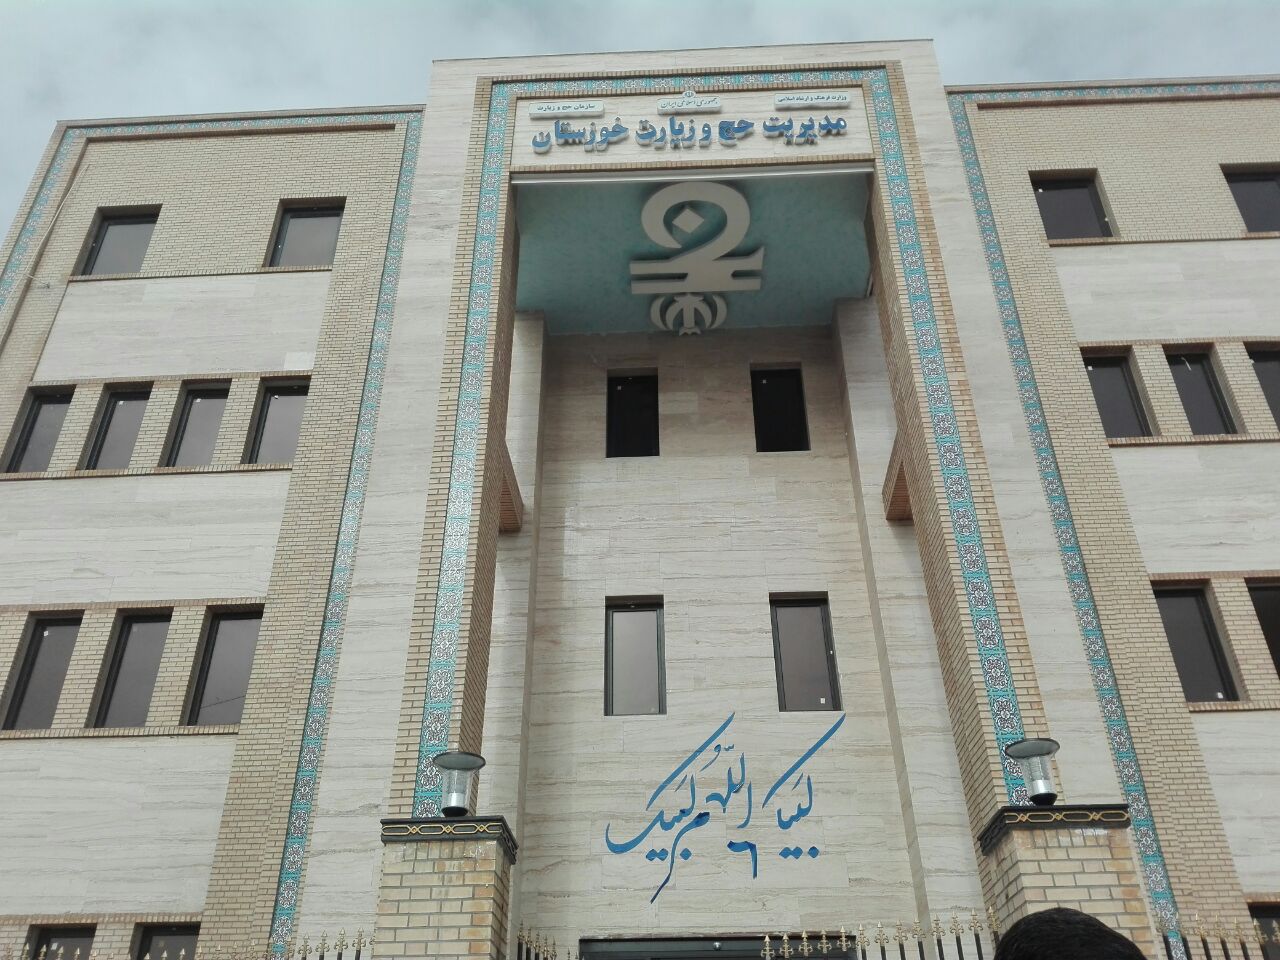 بازدید مدیرحج وزیارت وتعدادی ازمدیران دفاتراستان لرستان از حج وزیارت استان خوزستان